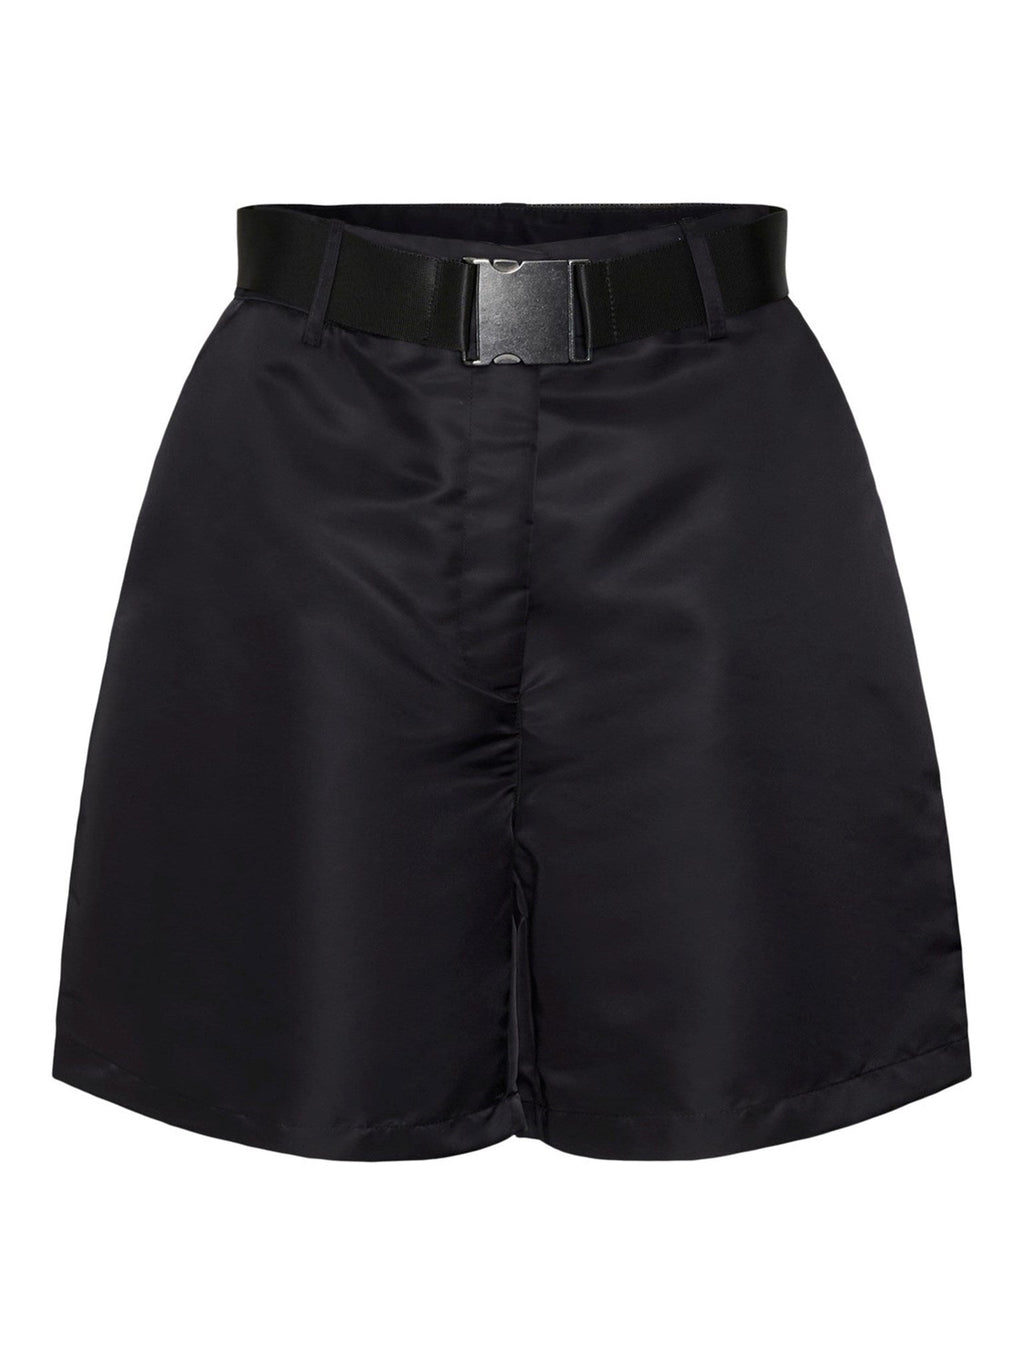 Ανυψωμένος Shorts - Μαύρος